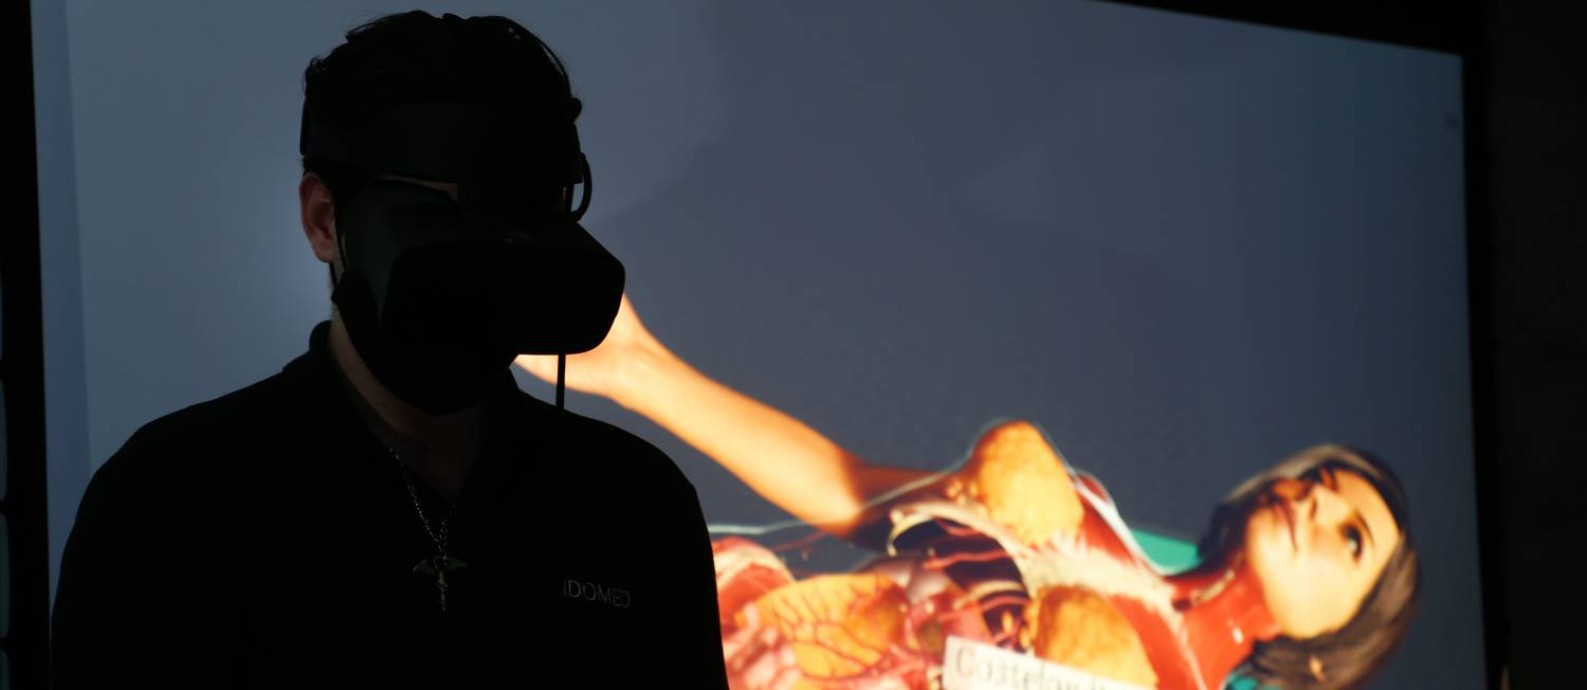 O laboratório com aulas de realidade virtual do Idomed, no Rio Foto: Roberto Moreyra / Agência O Globo